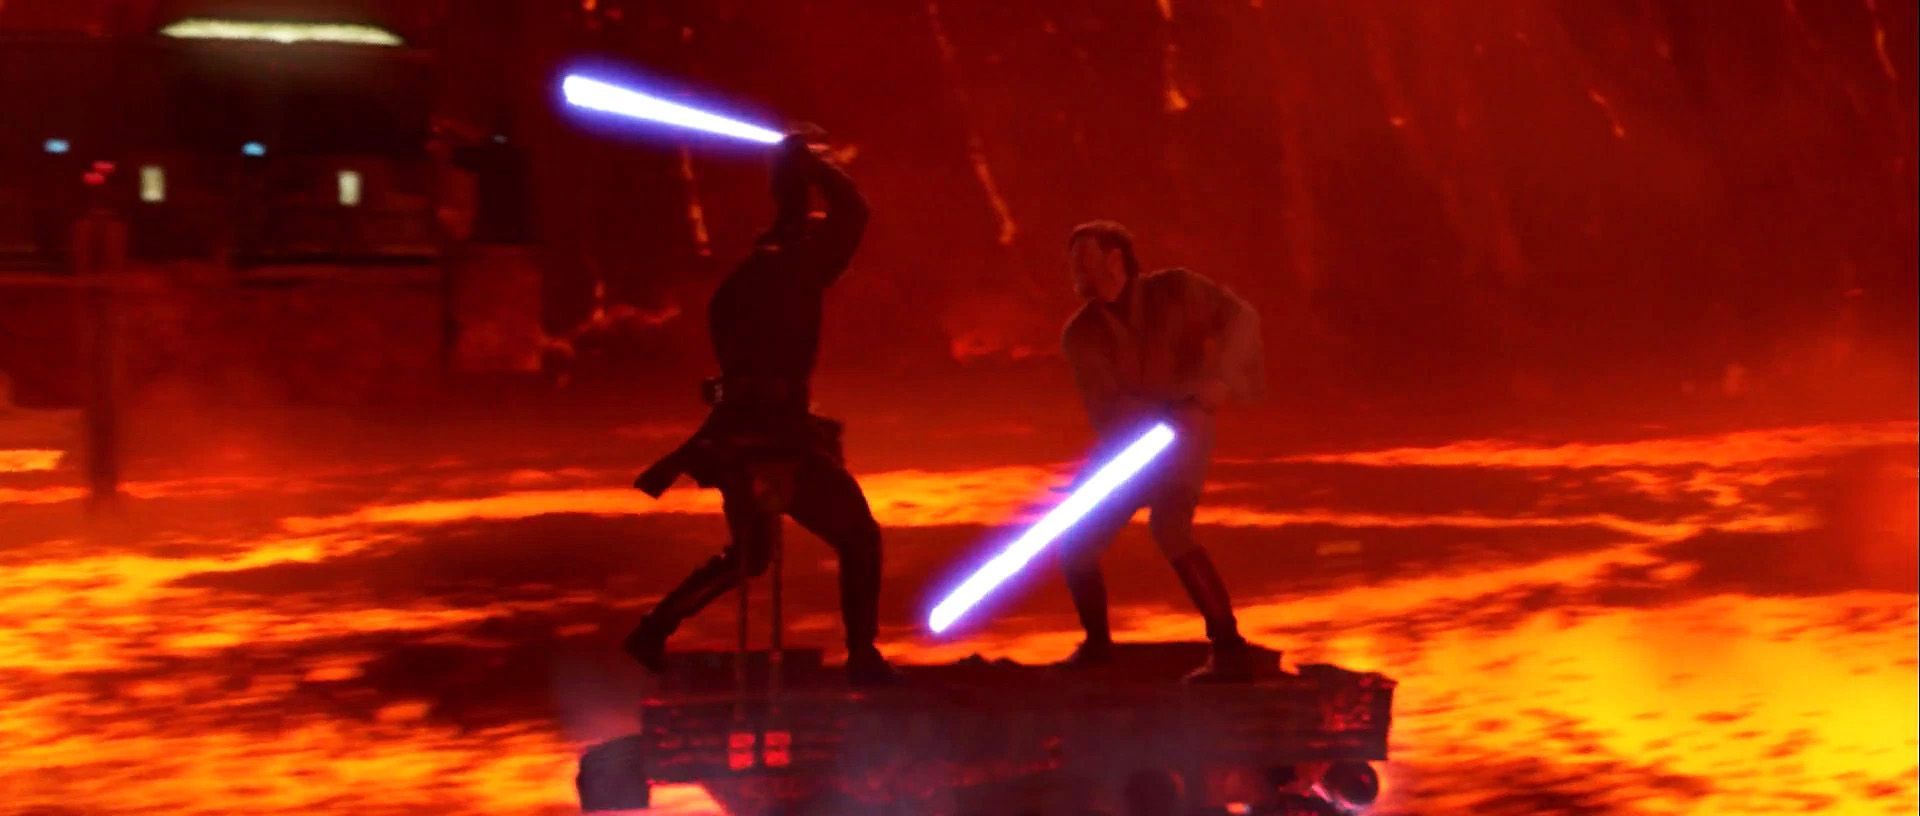 Pin The Clone Wars Anakin Vs Obi Wan Kenobi. Obi wan, Star wars movies ranked, Star wars